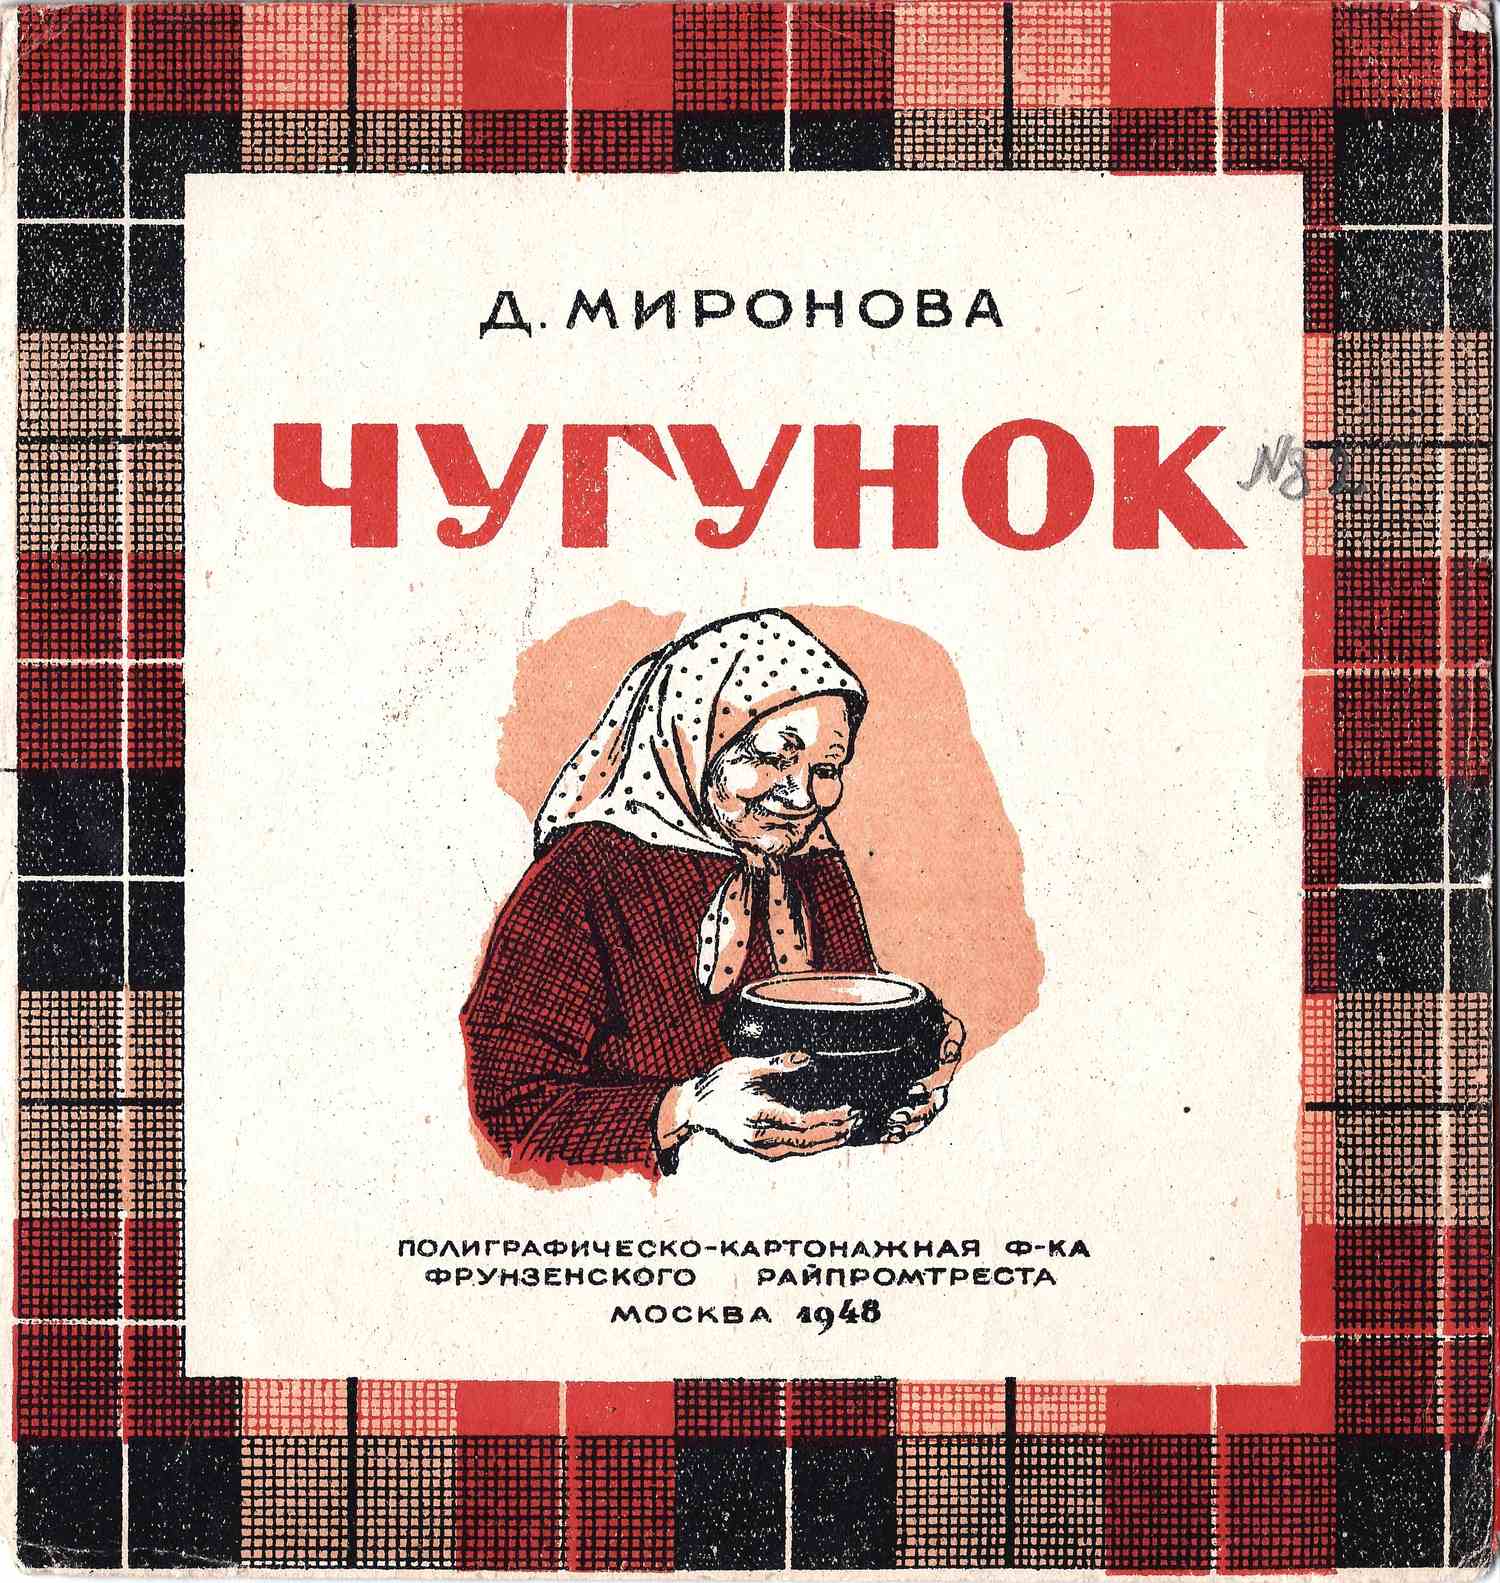 Маршак С. Мой зоосад (М., 1940). Волк и козлята (М., 1940). Миронова Д. Чугунок (М., 1948).